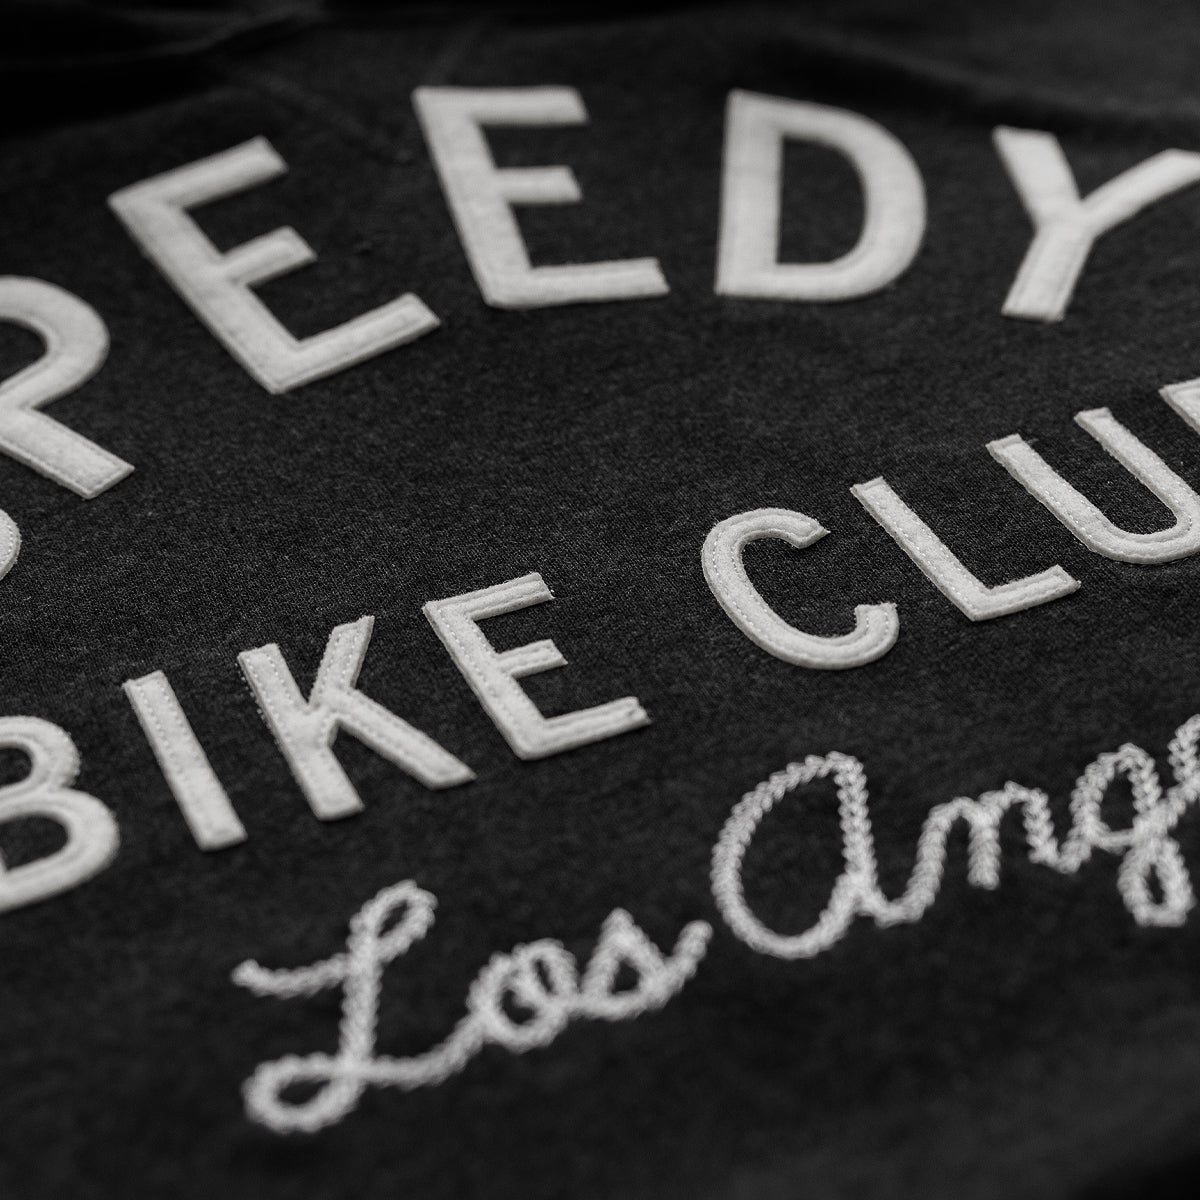 Speedy Bike Club Los Angeles Hoodie